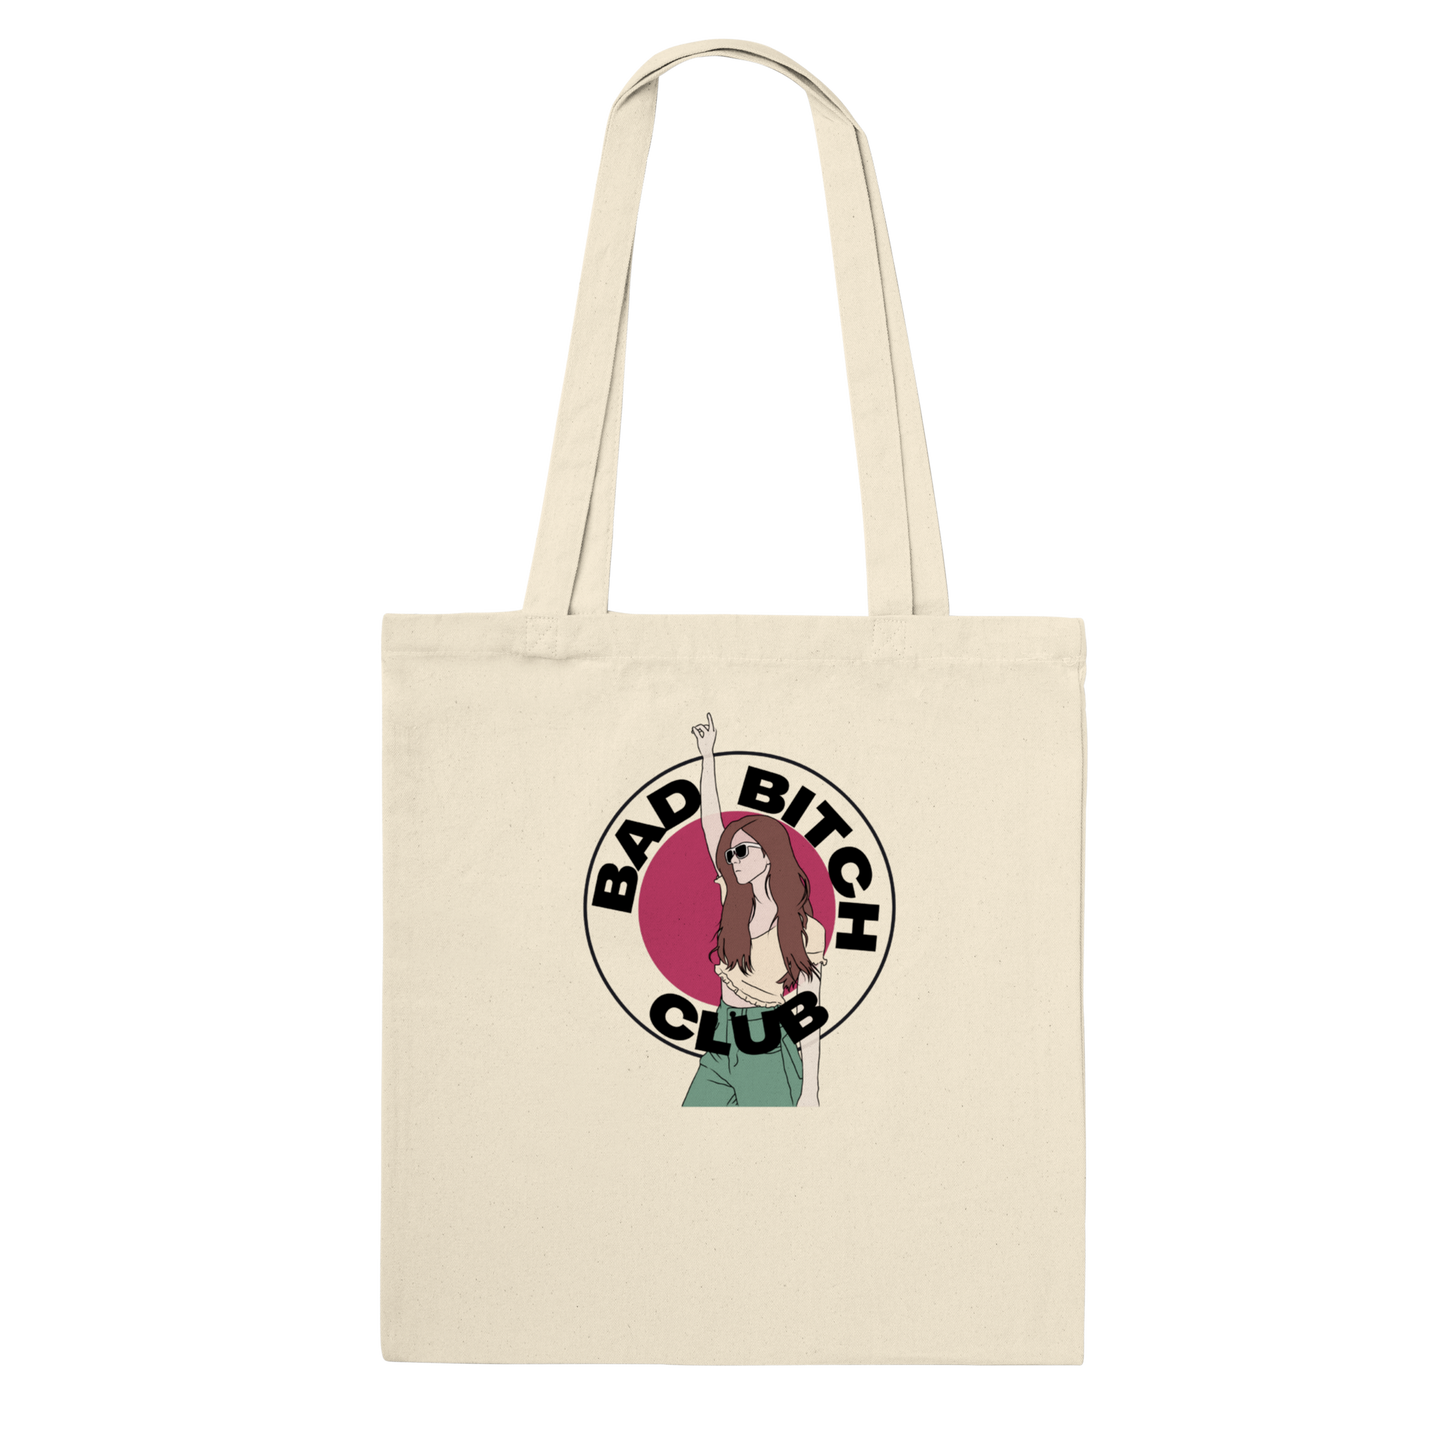 Bad Bitch Club - Classic Tote Bag